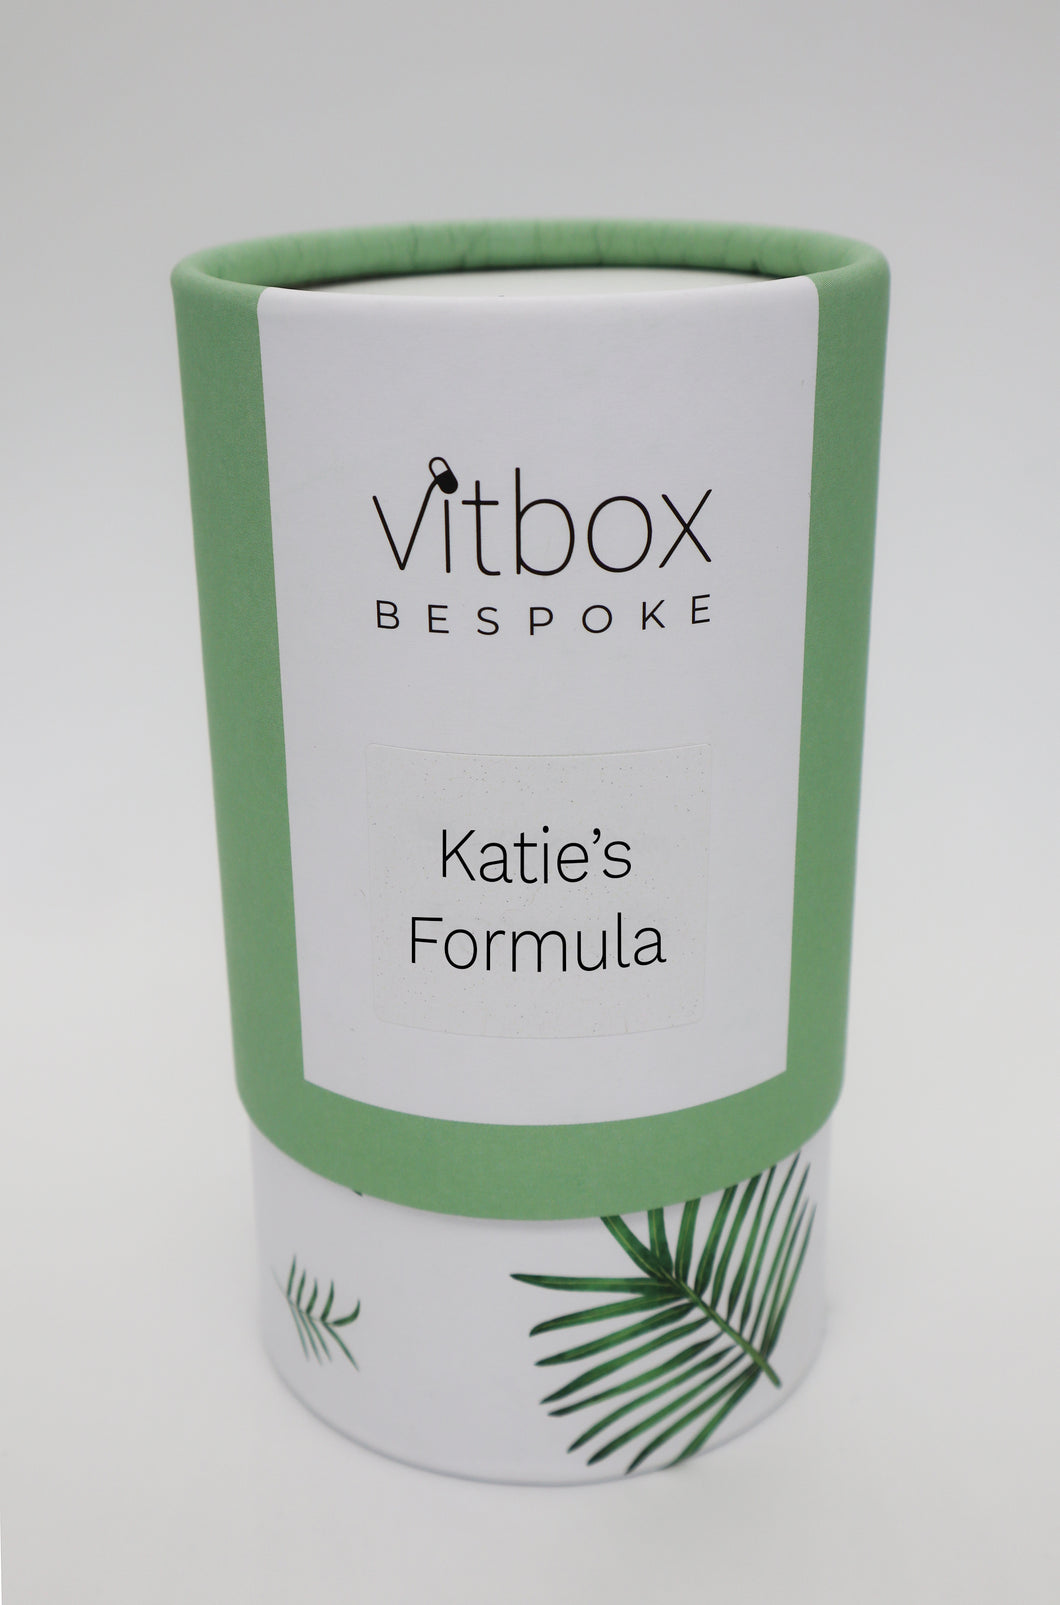 Katie's Vitbox Bespoke